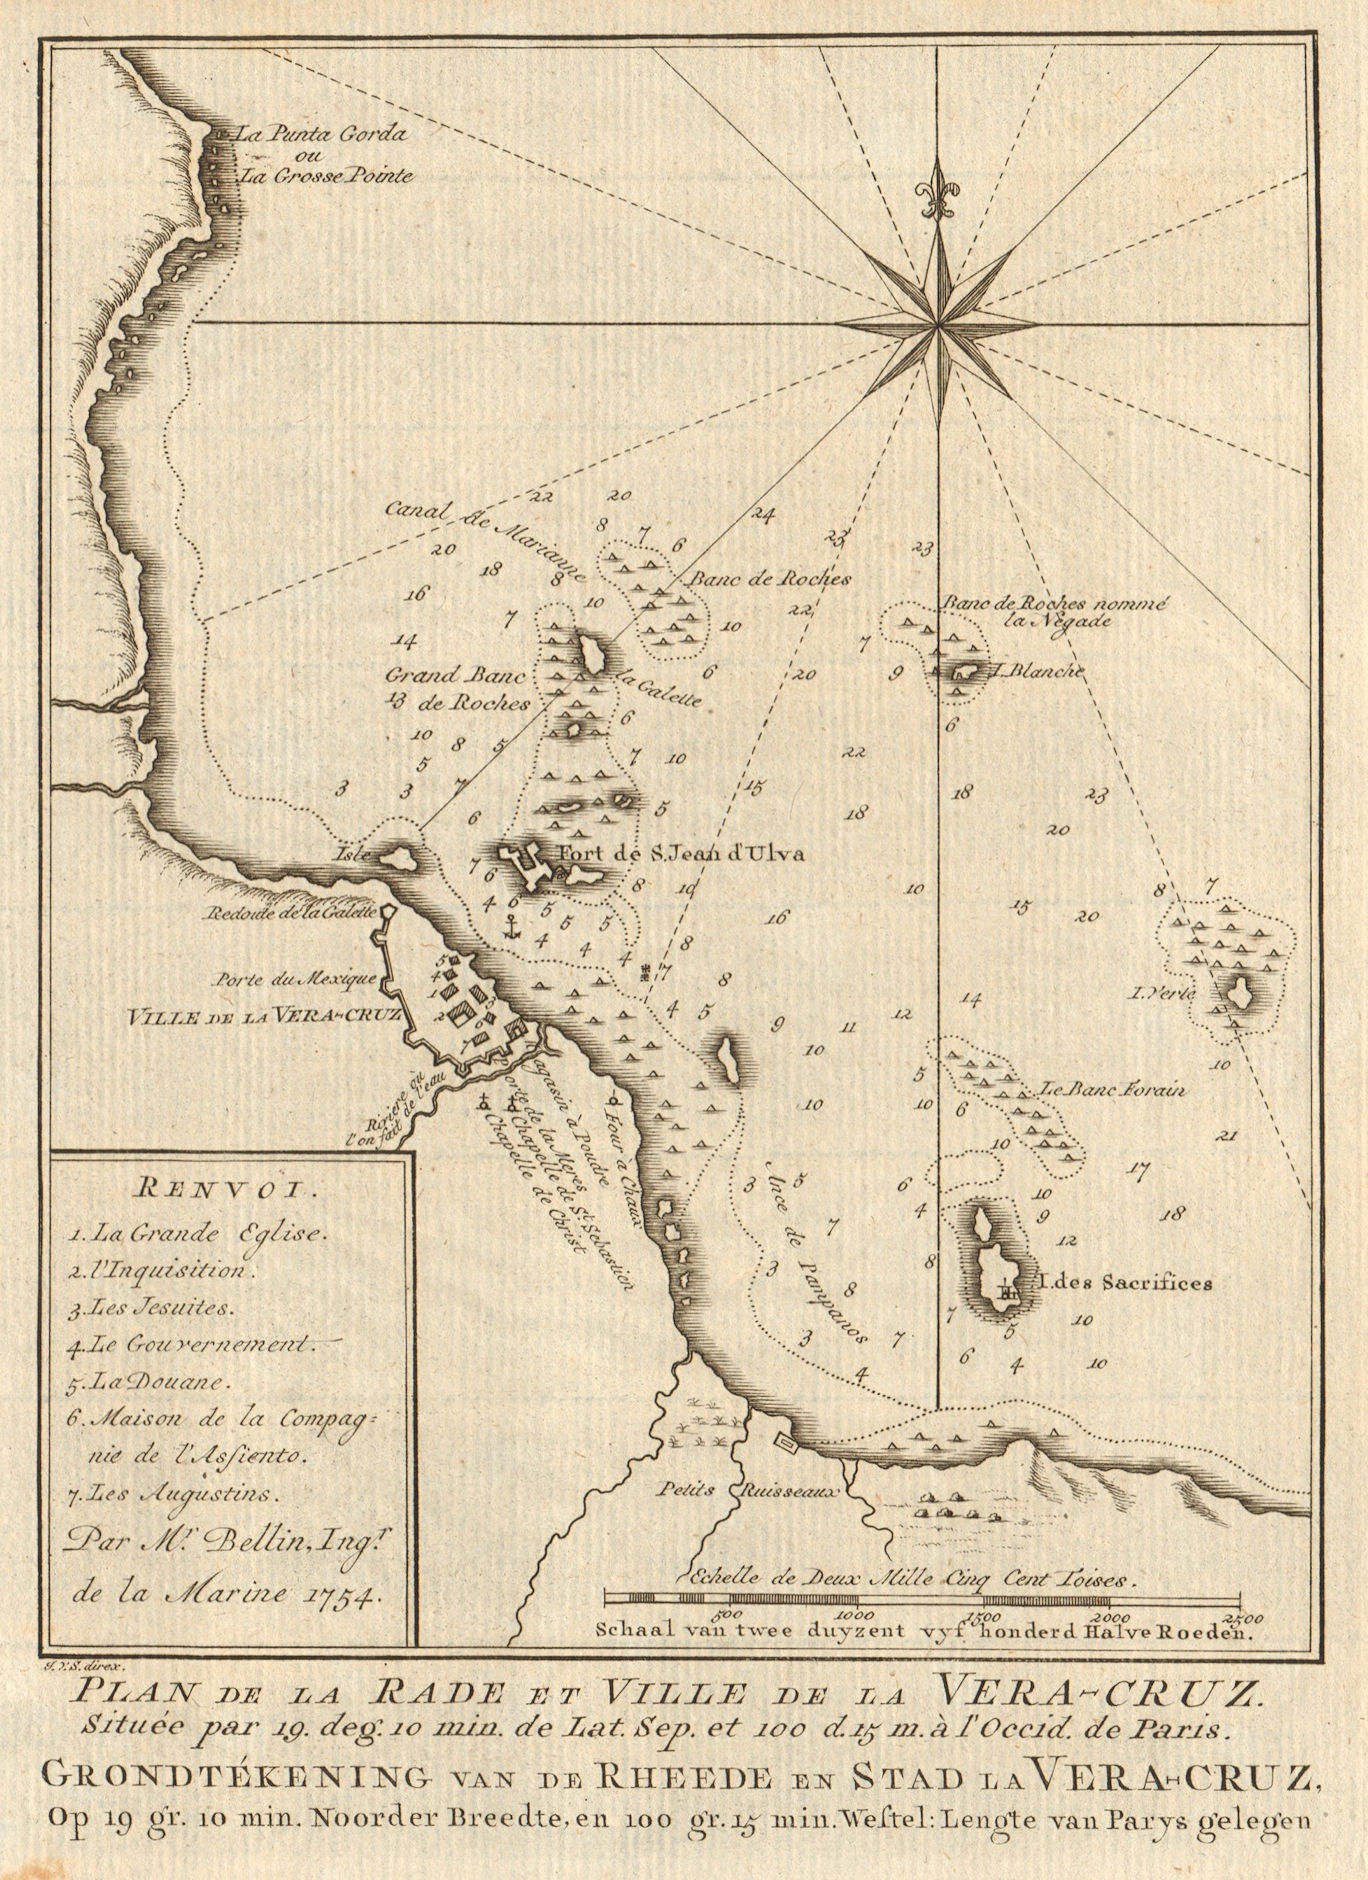 'Plan de la Rade & Ville de… Vera-Cruz'. Veracruz, Mexico BELLIN/SCHLEY 1758 map